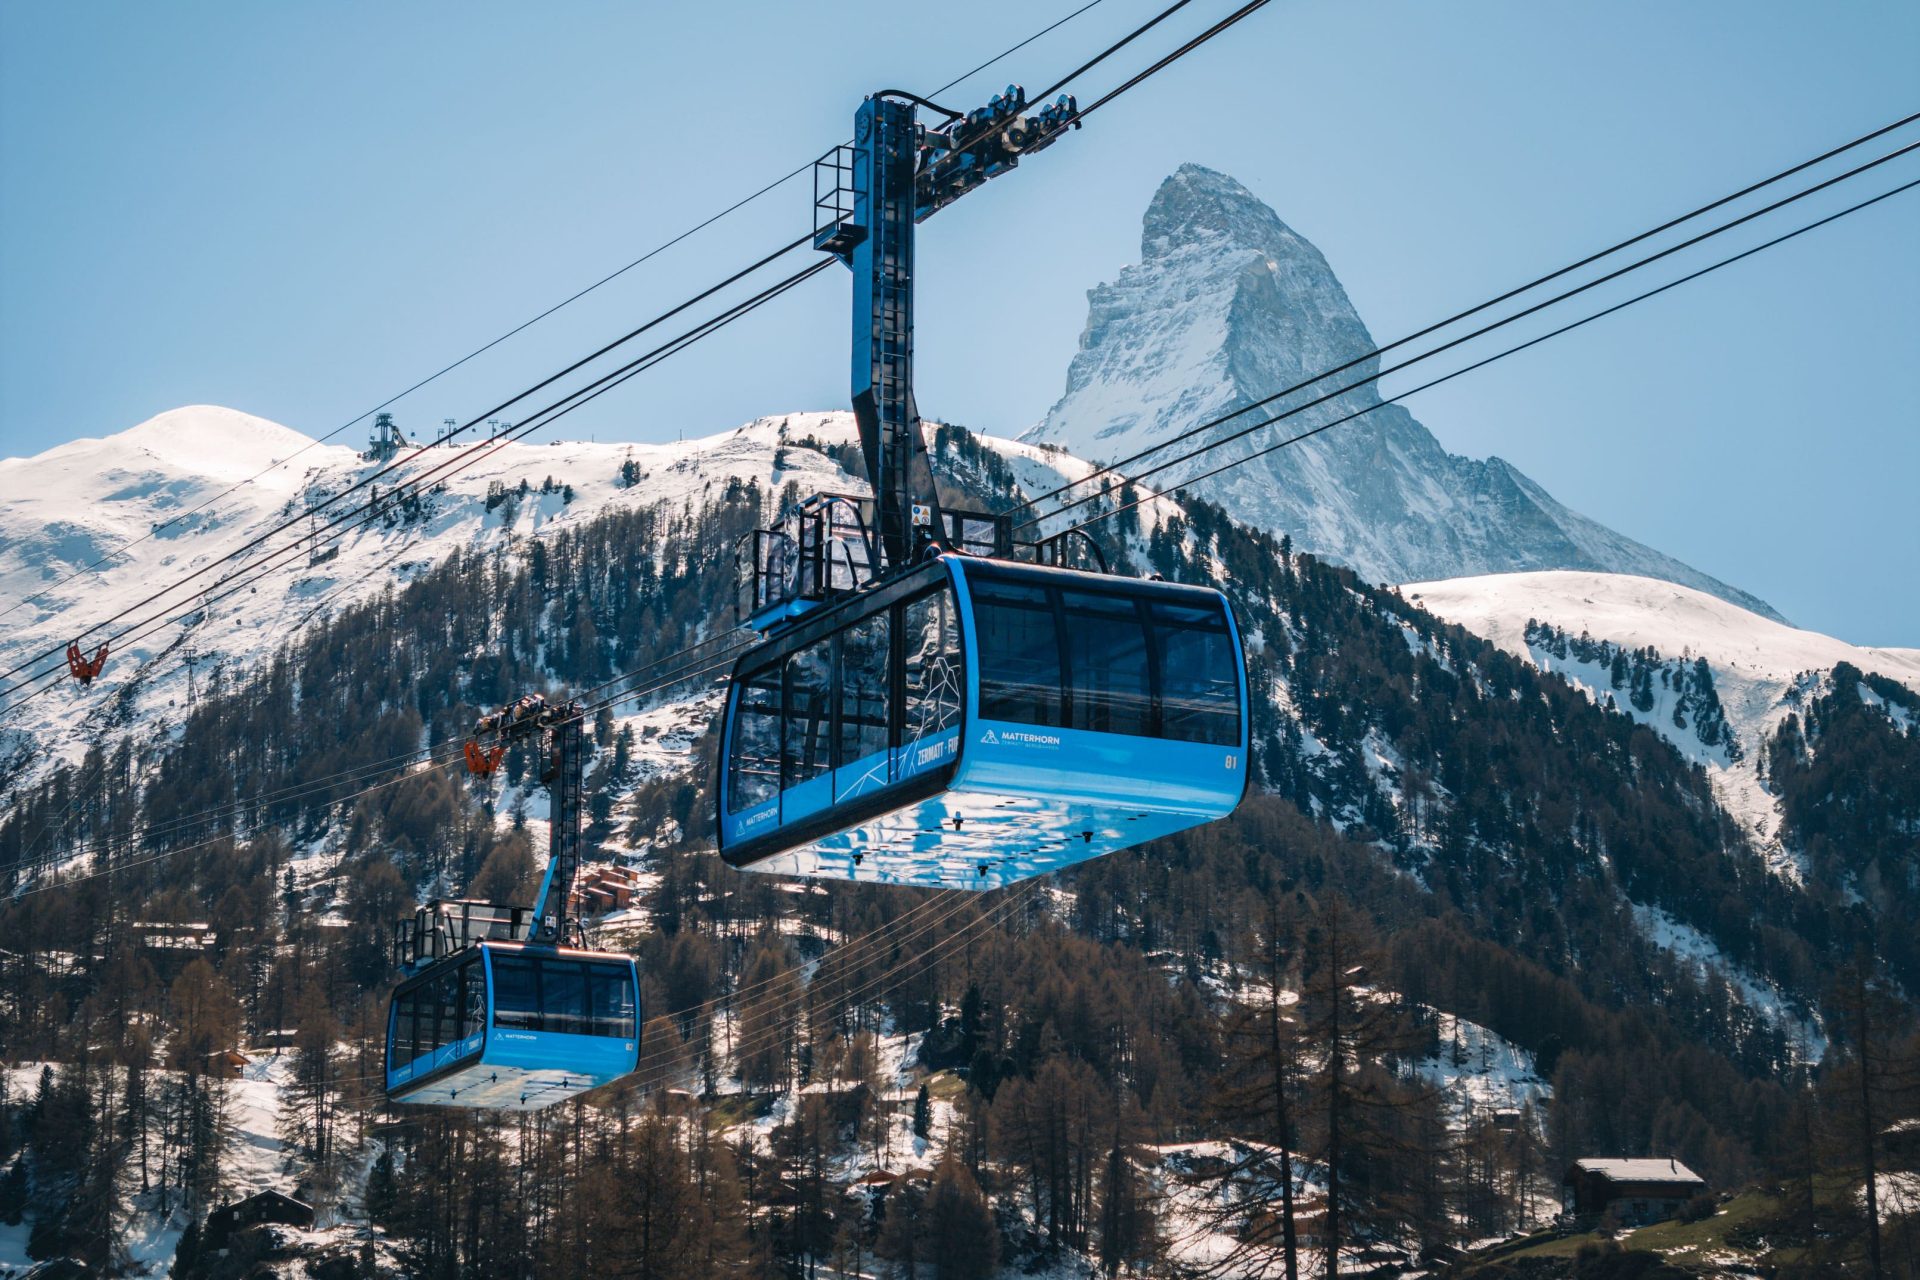 Zermatt, Schweiz, eröffnet für den Sommer eine neue „Dachfahrt“ mit einer Furie-Straßenbahn